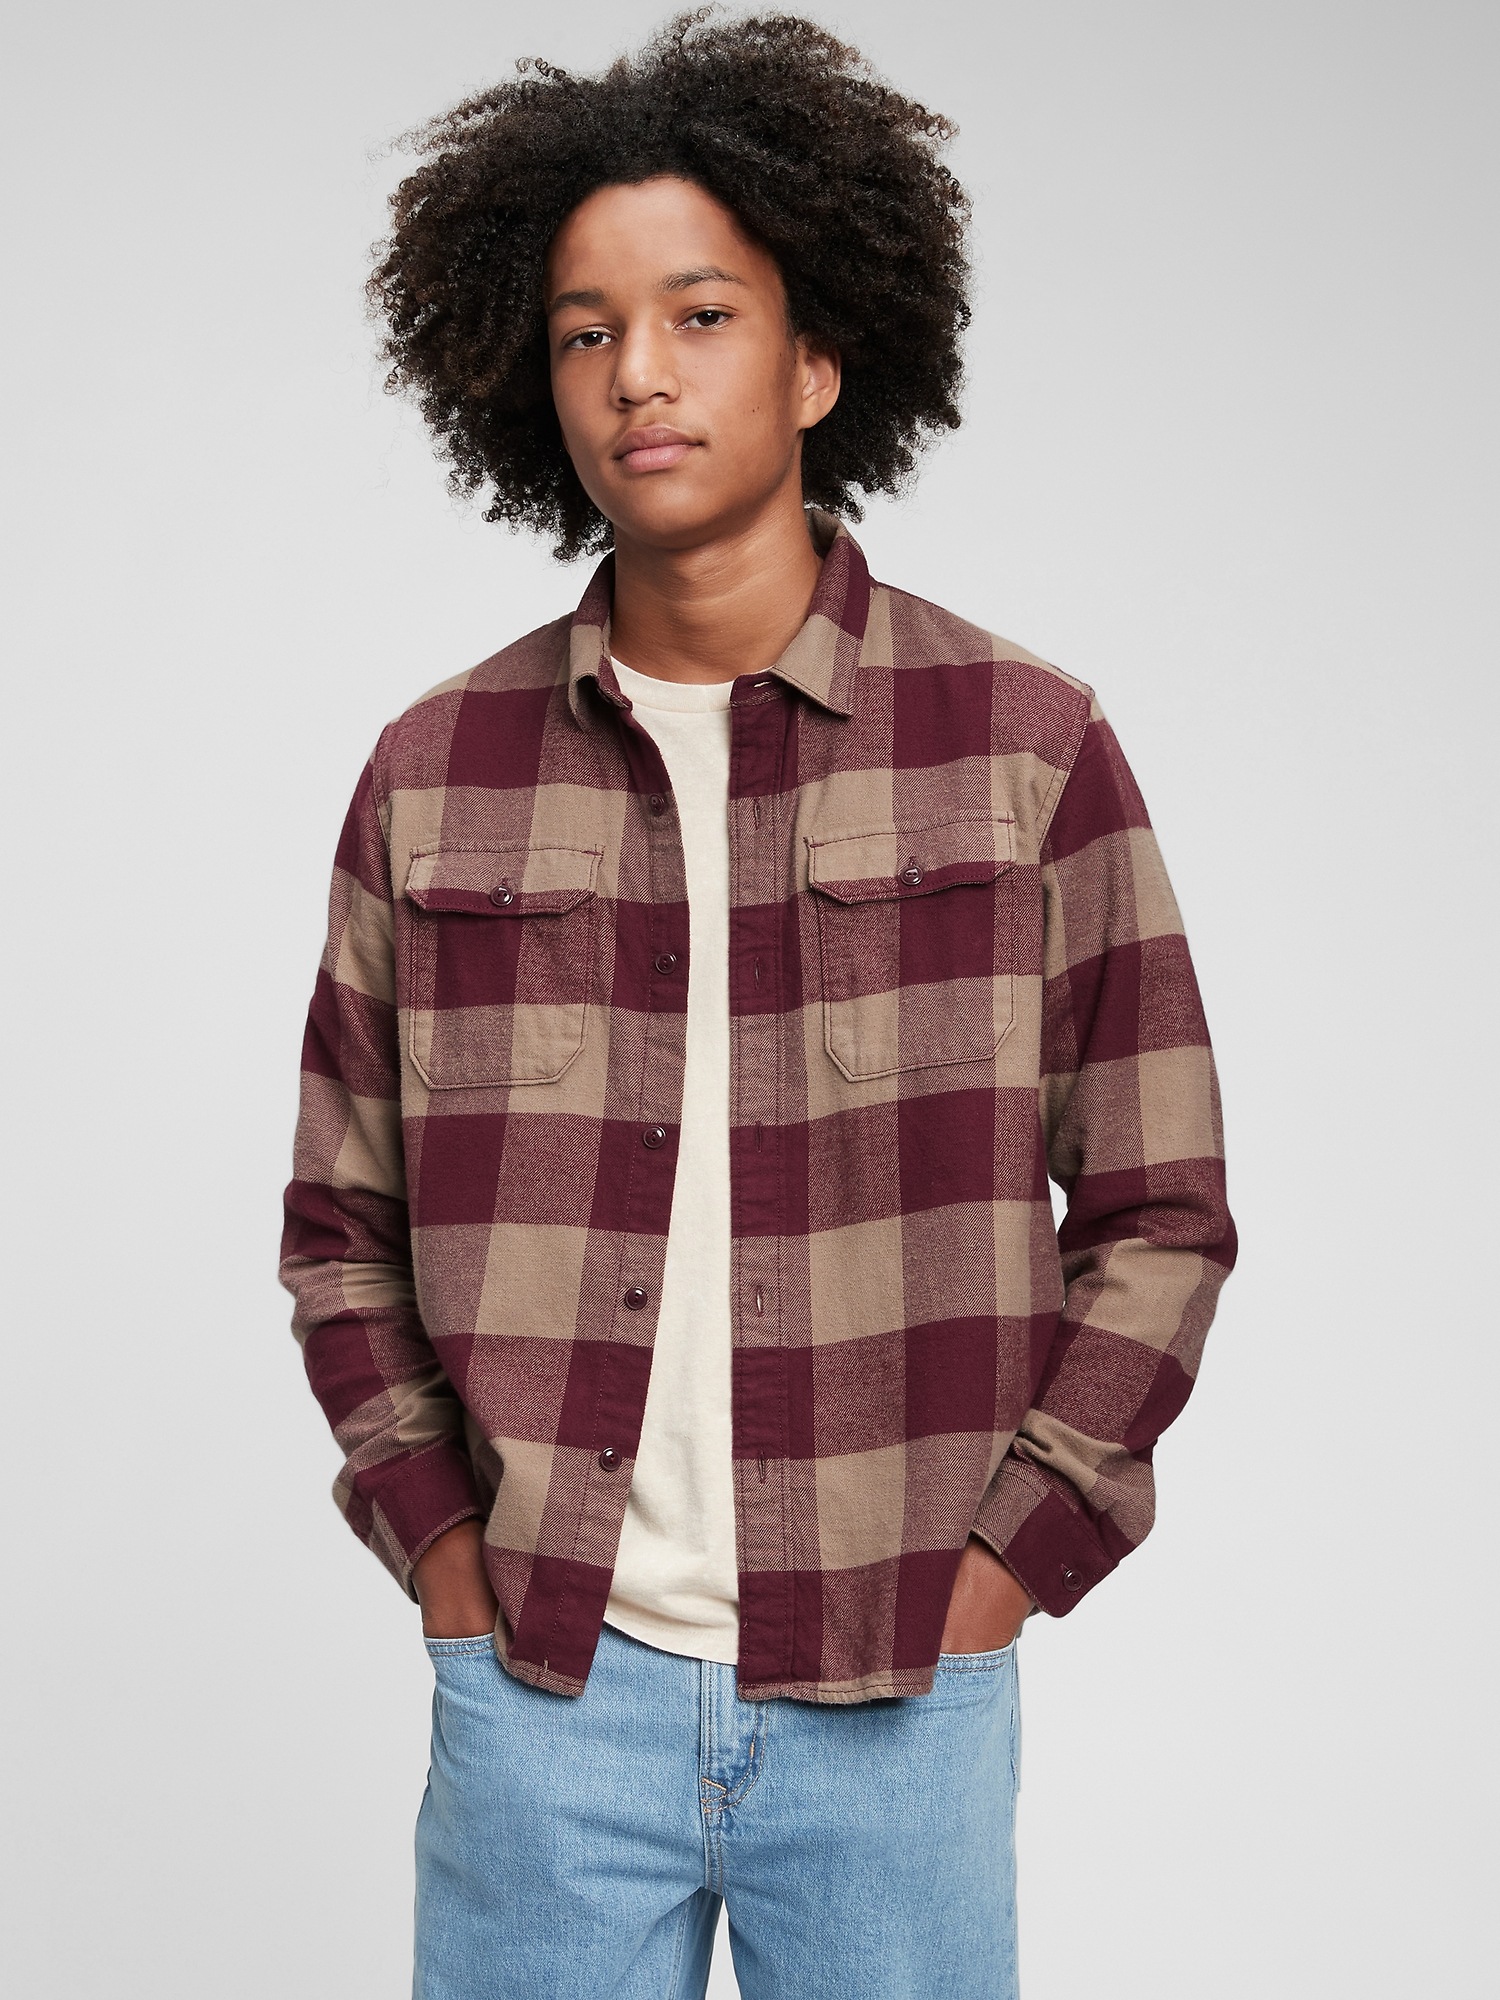 Teen 100% Organic Cotton Flannel Shirt